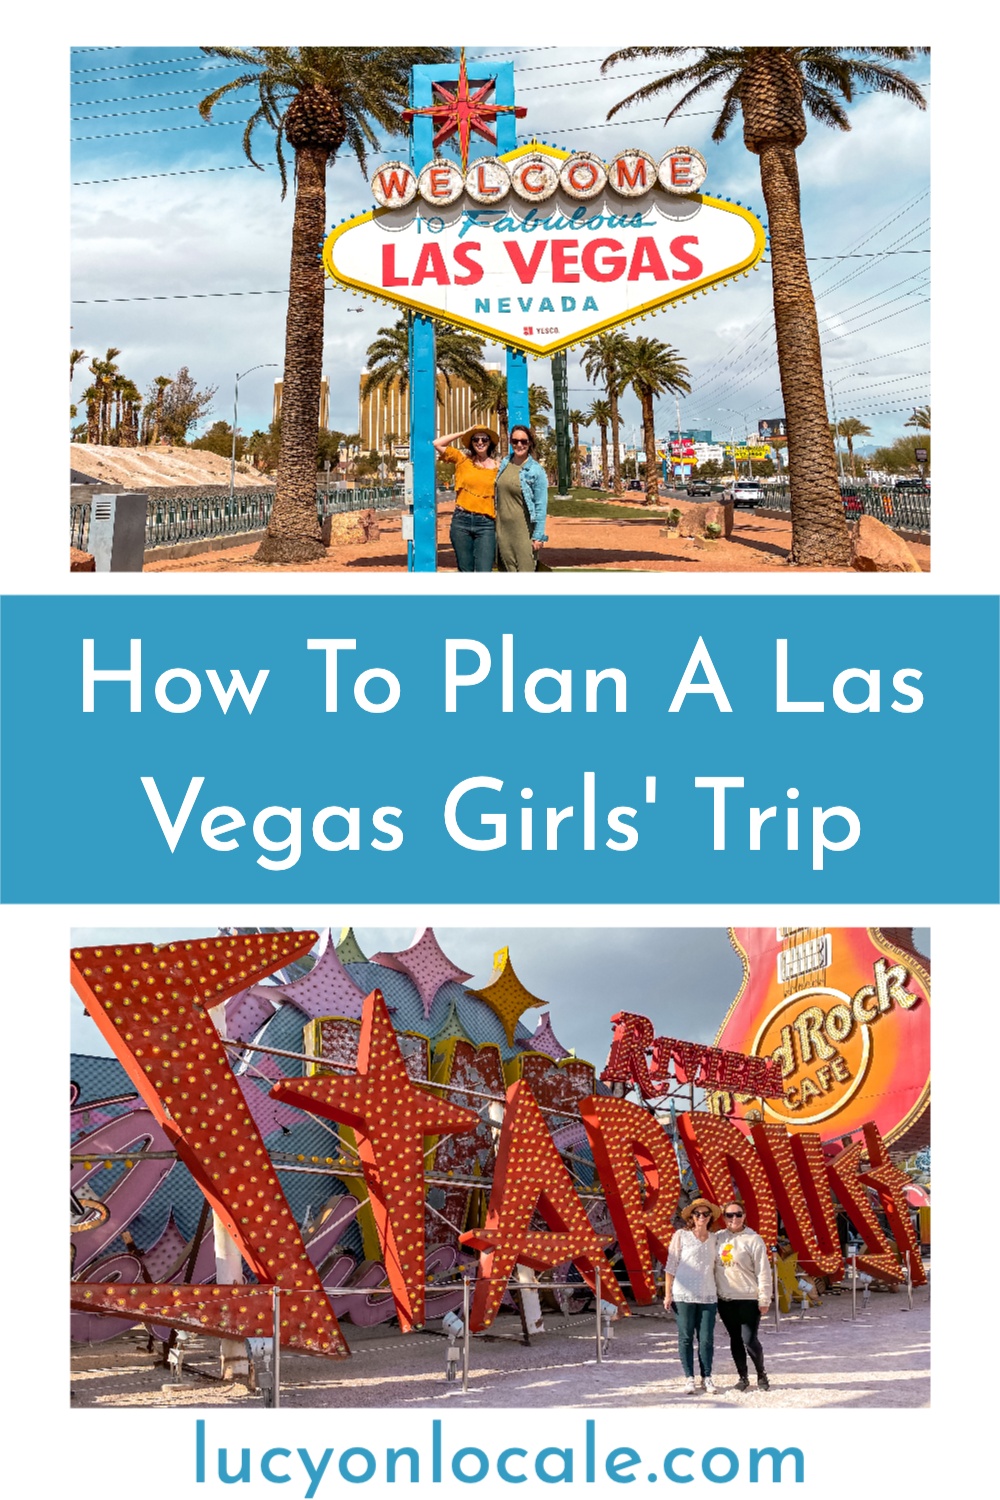 Las Vegas girls' trip